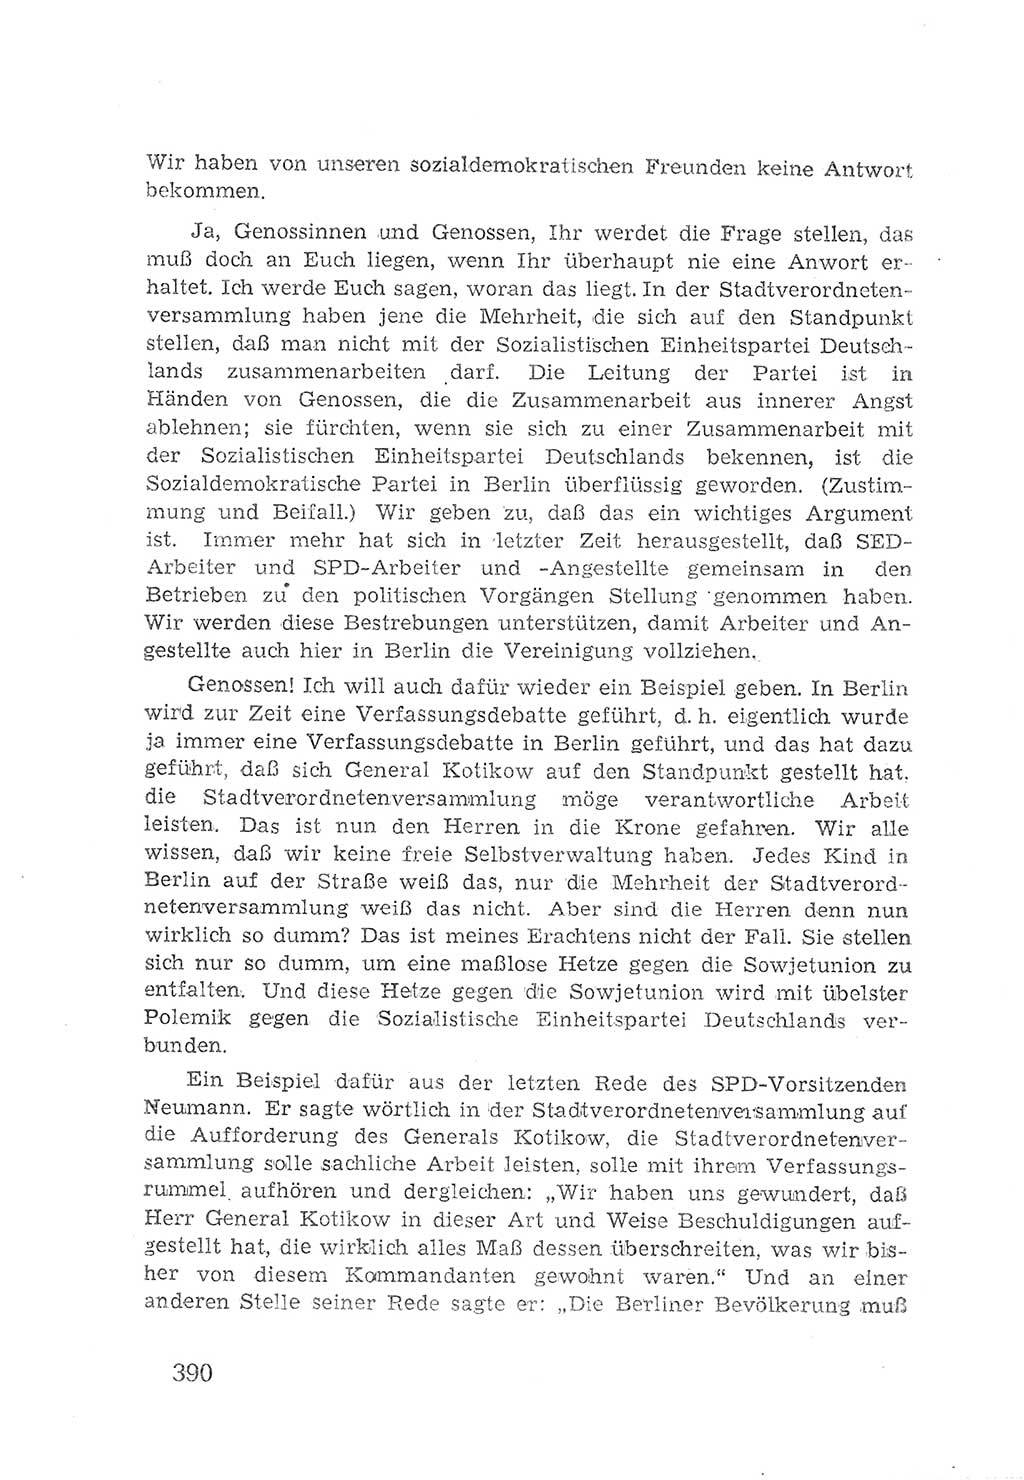 Protokoll der Verhandlungen des 2. Parteitages der Sozialistischen Einheitspartei Deutschlands (SED) [Sowjetische Besatzungszone (SBZ) Deutschlands] 1947, Seite 390 (Prot. Verh. 2. PT SED SBZ Dtl. 1947, S. 390)